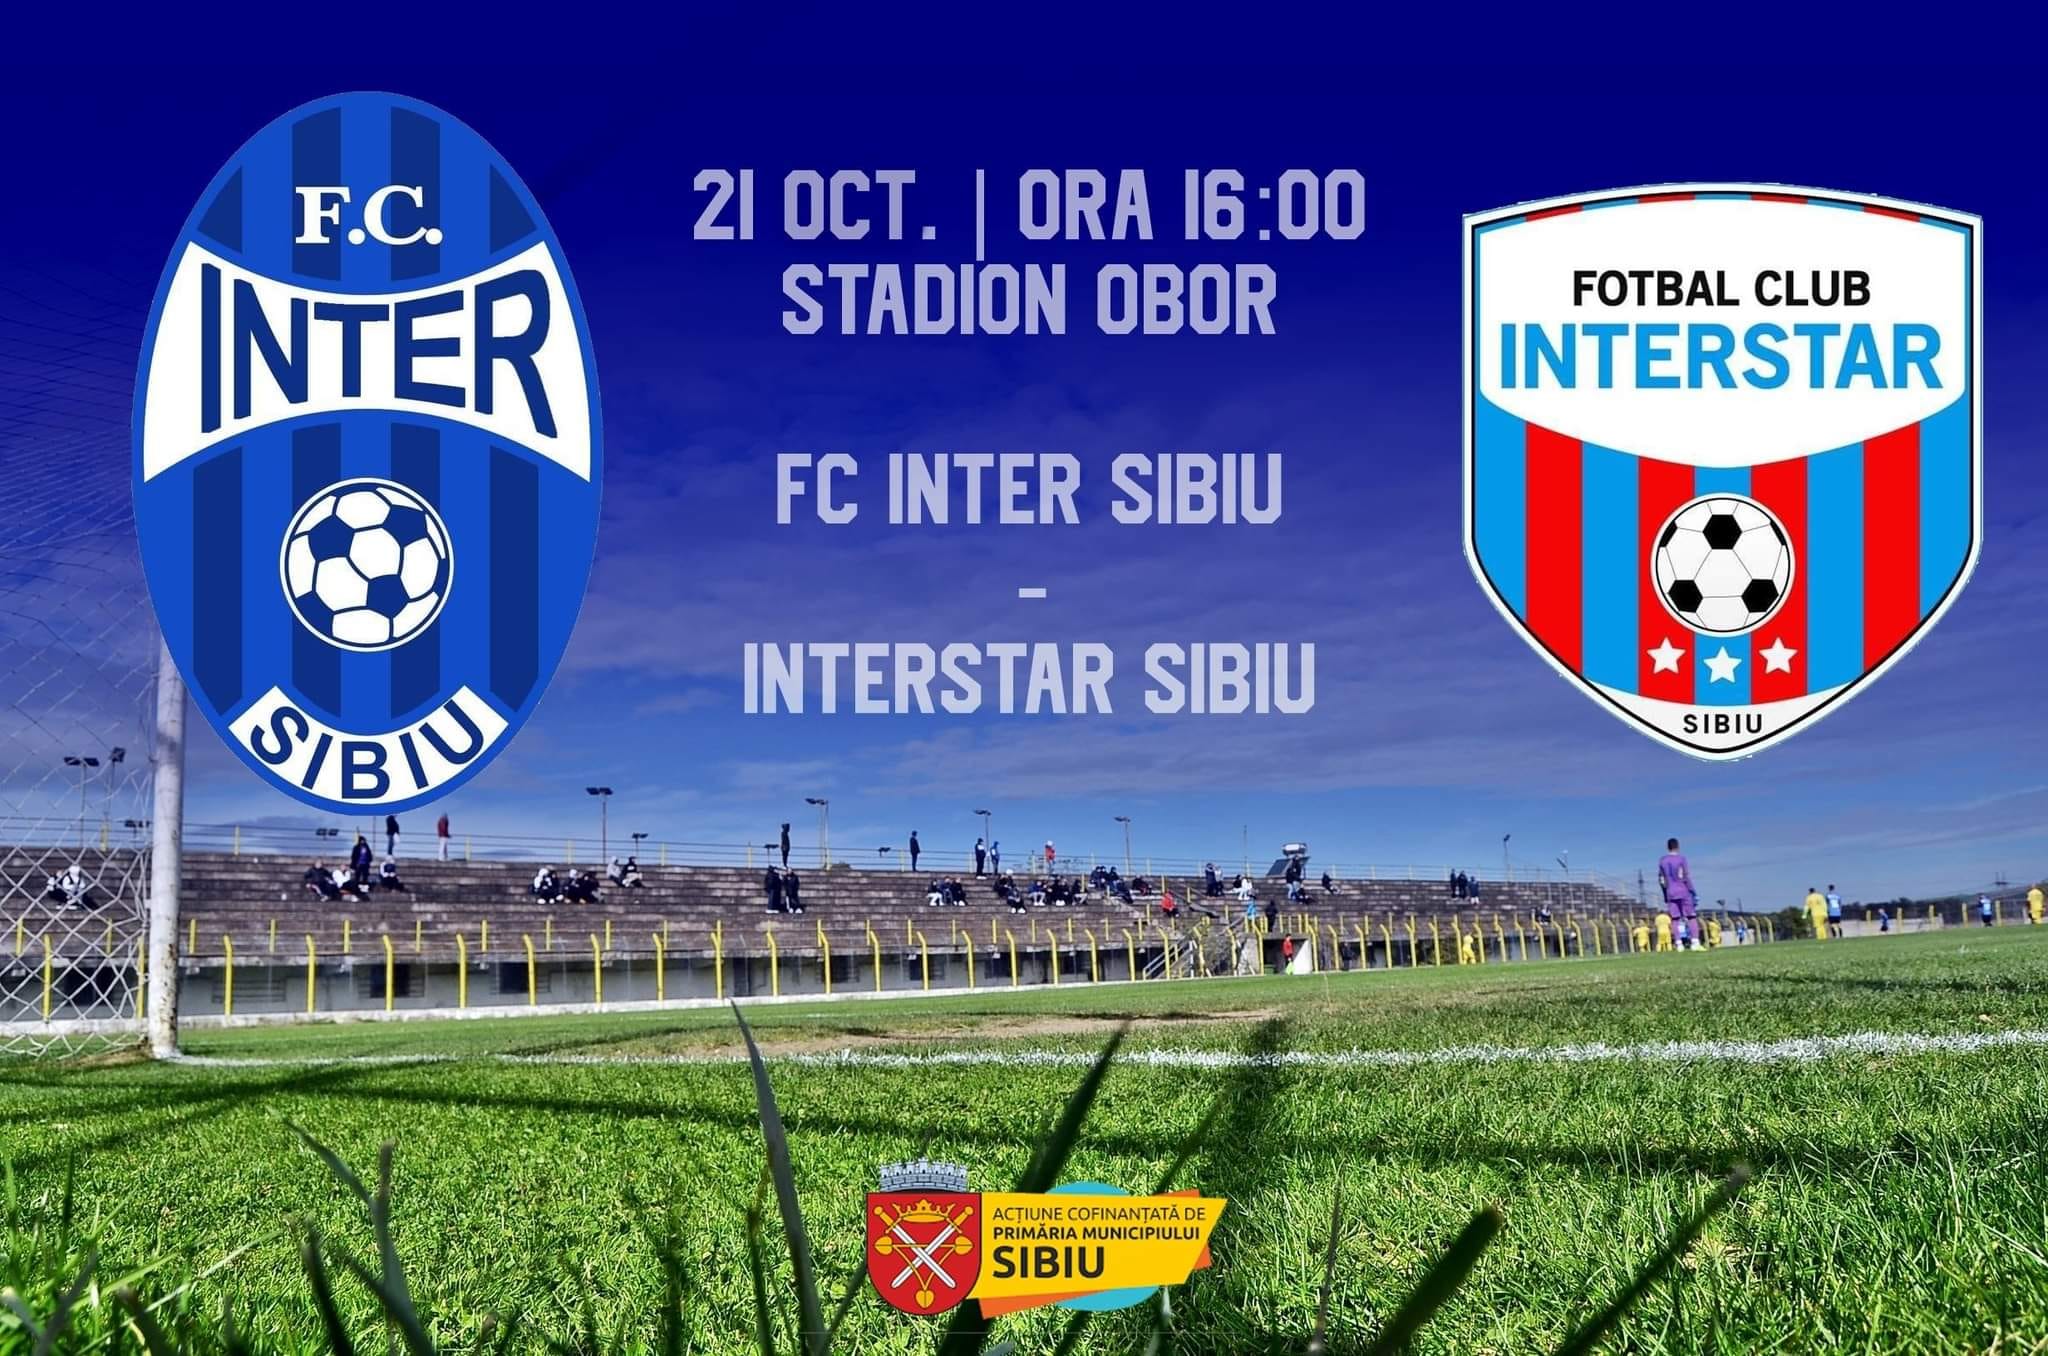 AFC Inter Stars 2020 Sibiu vs AS FC Interstar Sibiu 